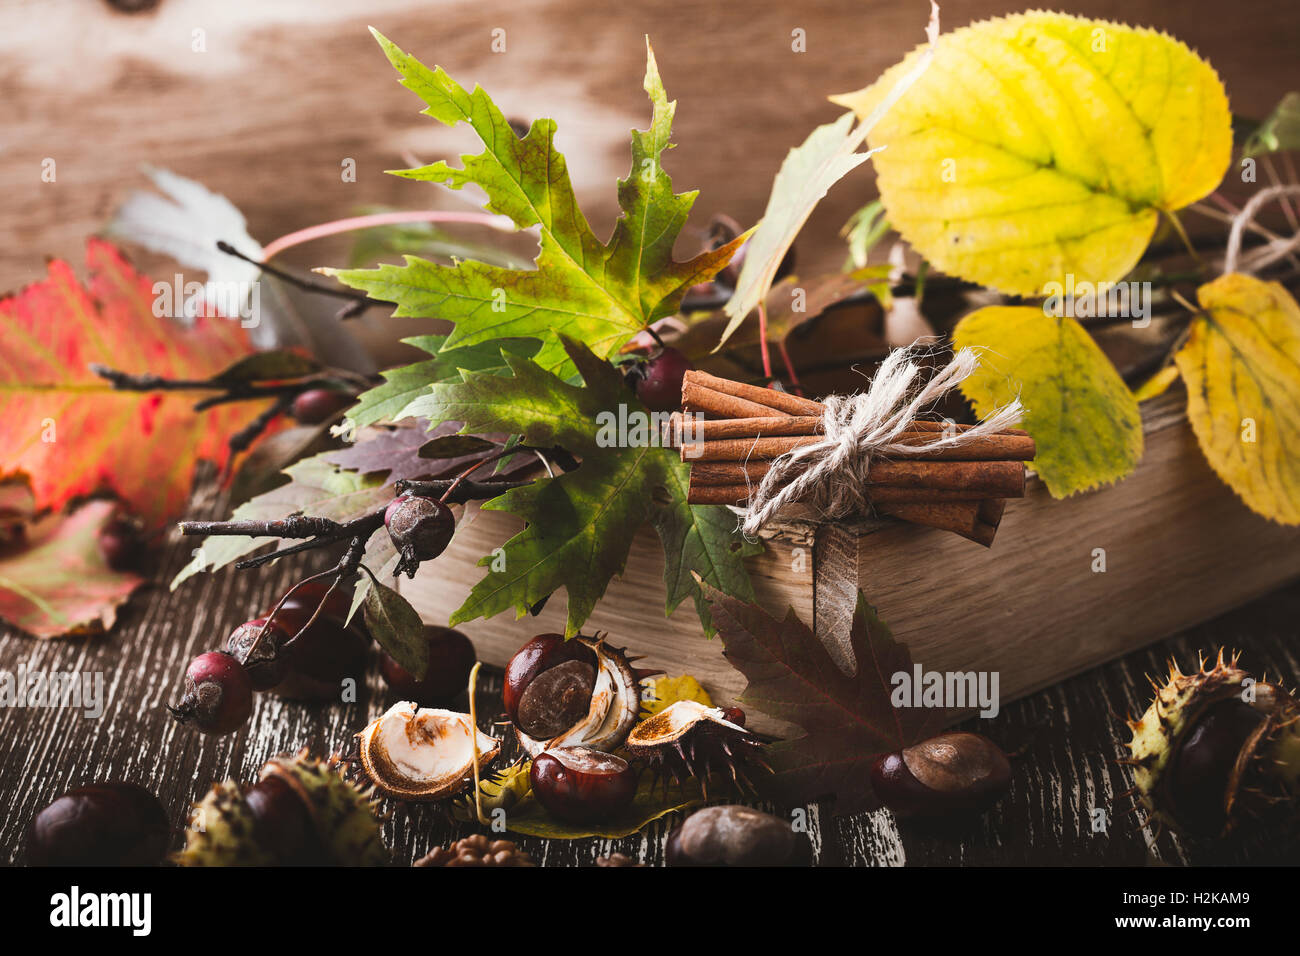 Automne décoration maison avec des châtaignes, noix, cannelle, feuilles. Joyeux Thanksgiving concept rustique Banque D'Images